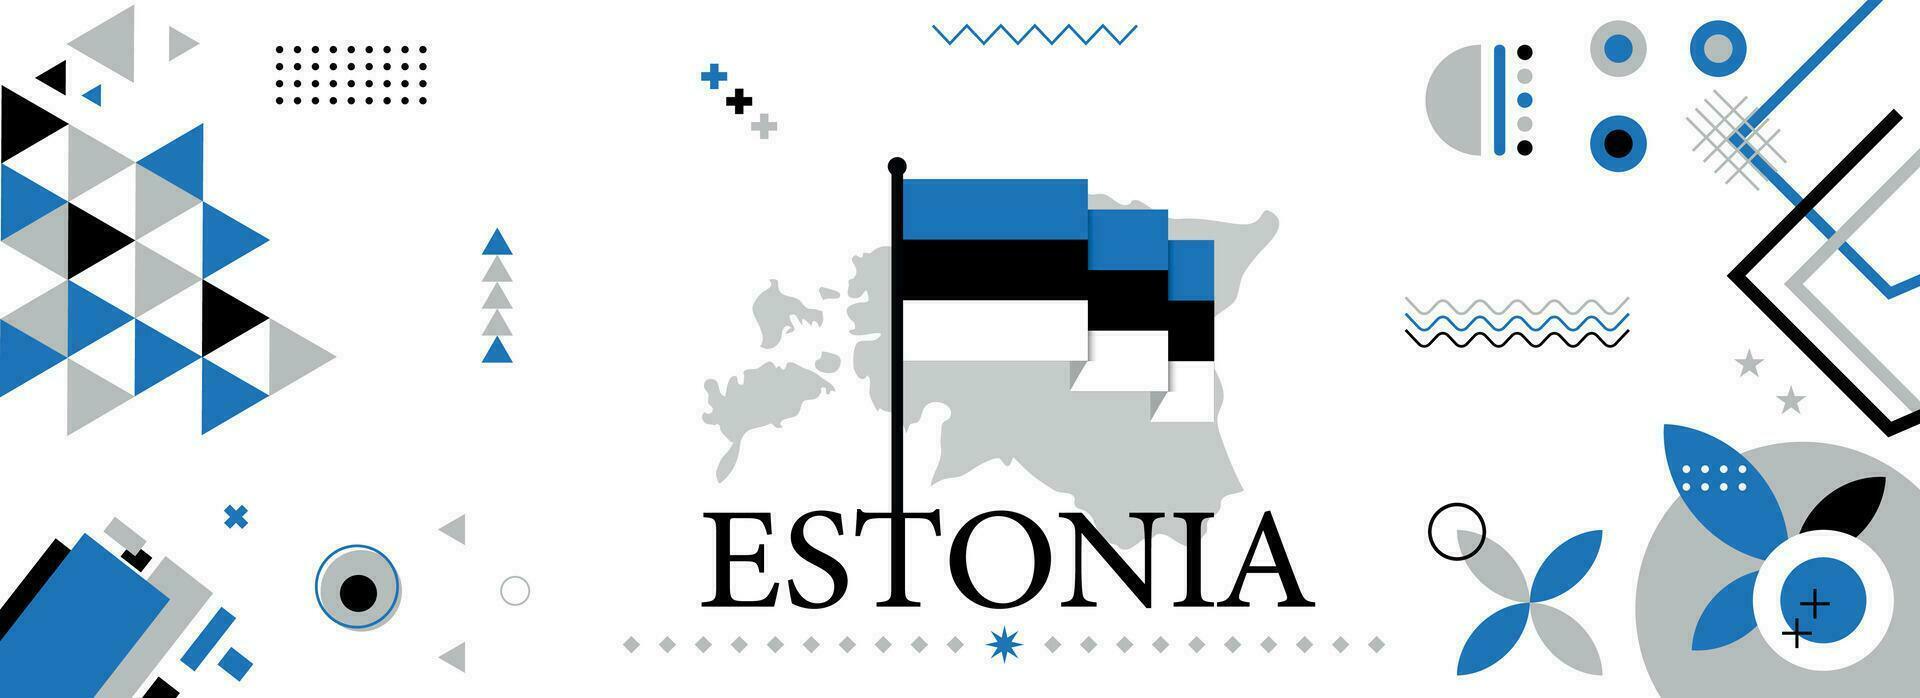 Estland nationaal of onafhankelijkheid dag banier ontwerp voor land viering. vlag en kaart van Estland met modern retro ontwerp en abstract meetkundig pictogrammen. vector illustratie